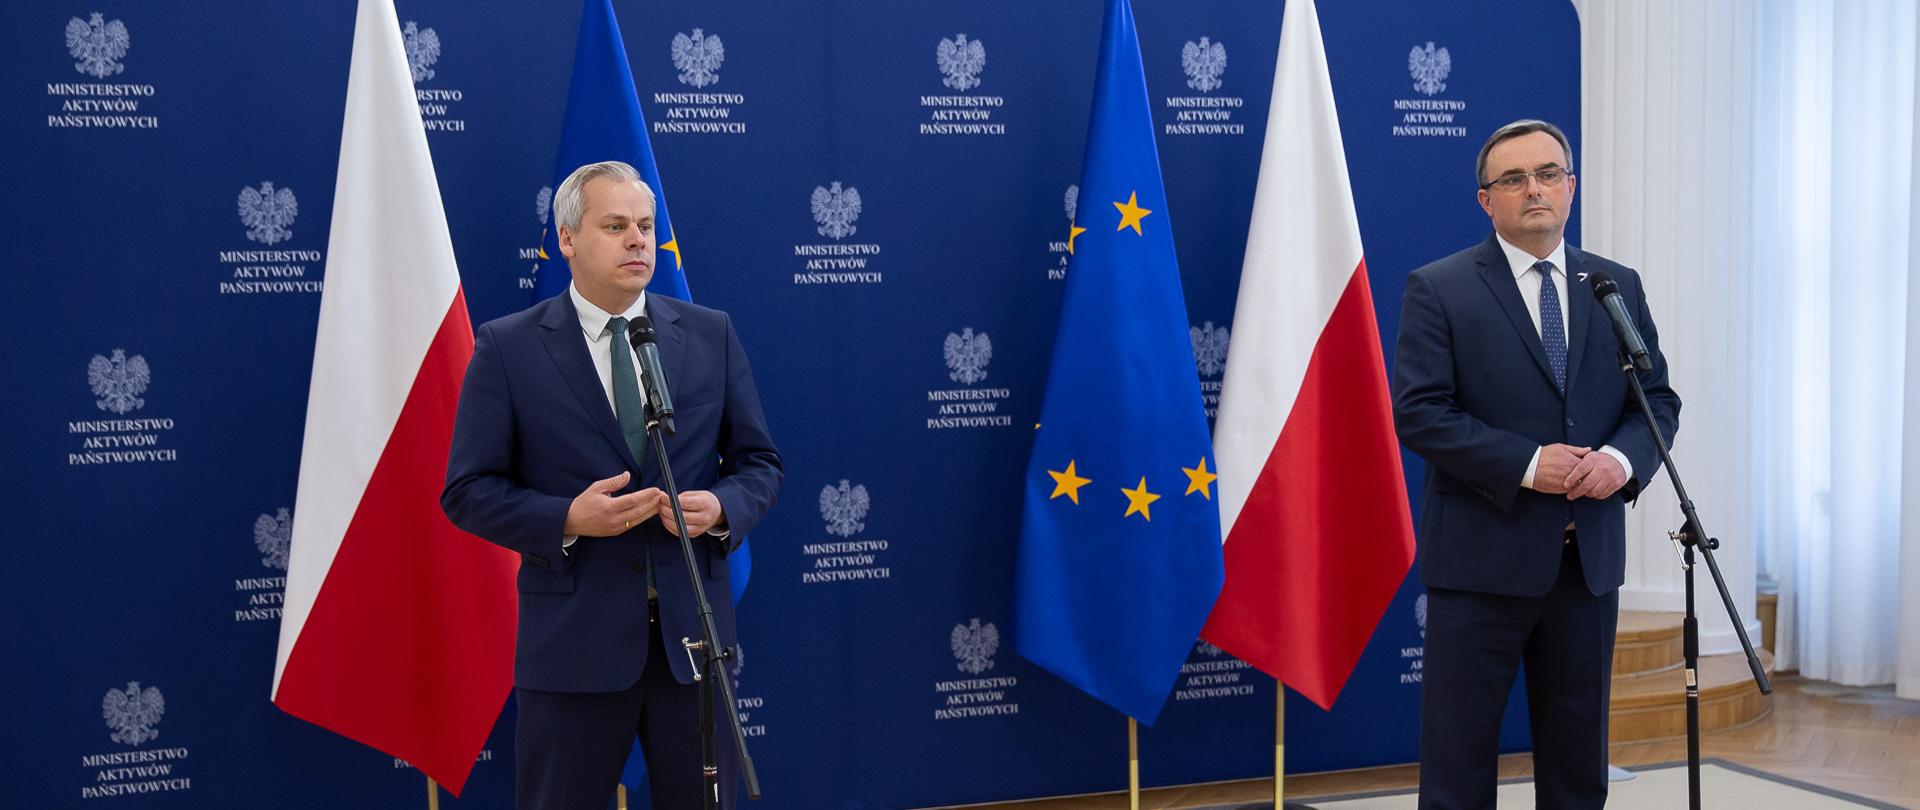 Wiceminister Karol Rabenda i Prezes Grupy Azoty S.A. Tomasz Hinc stoją przy mikrofonach, bliski plan. W tle ścianka z logotypami MAP oraz flagi - polska i unijna. 